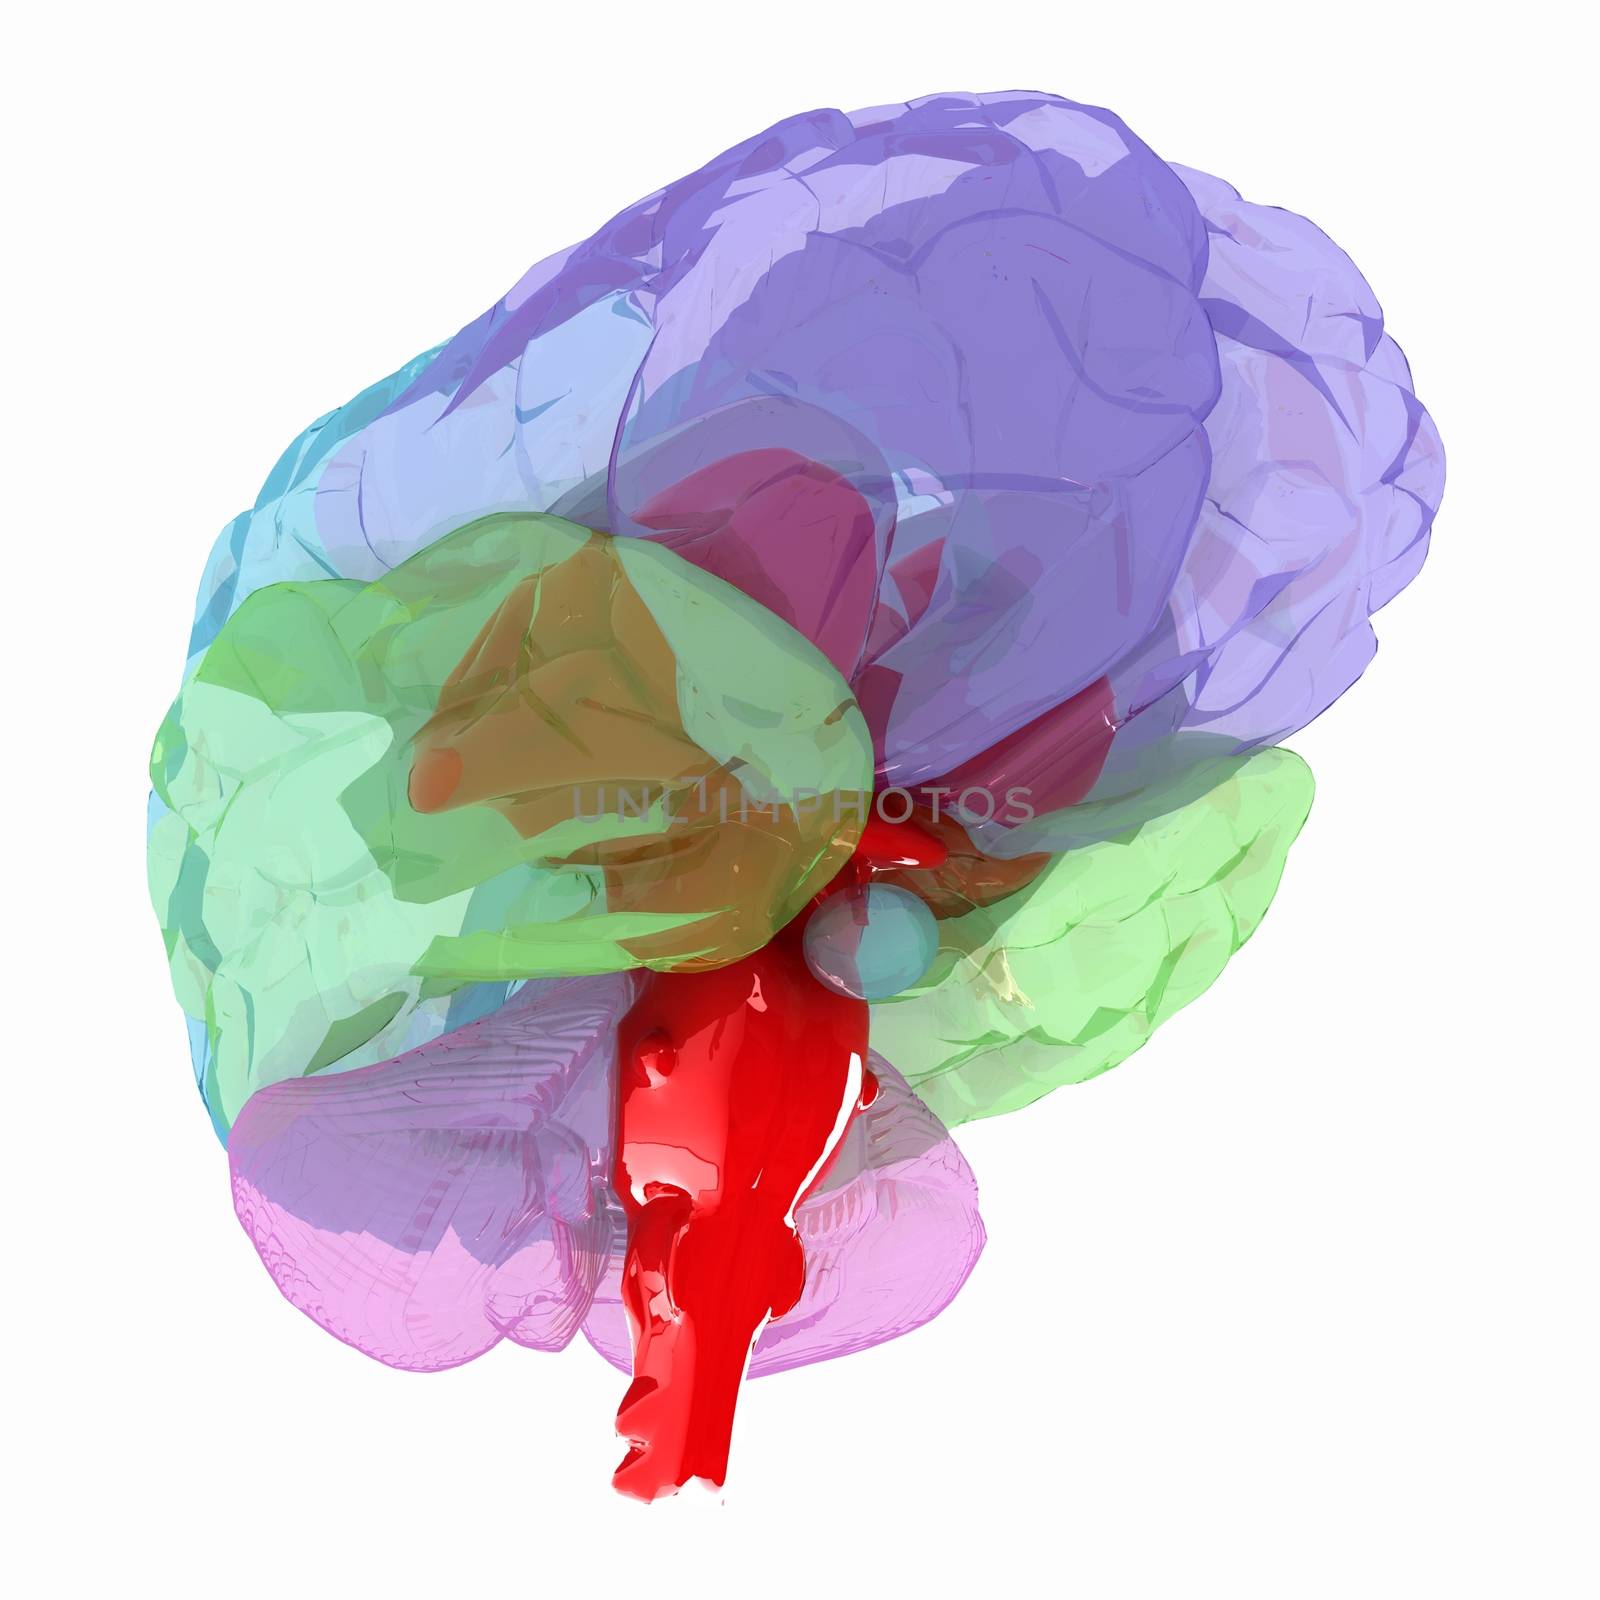 Human brain by Guru3D